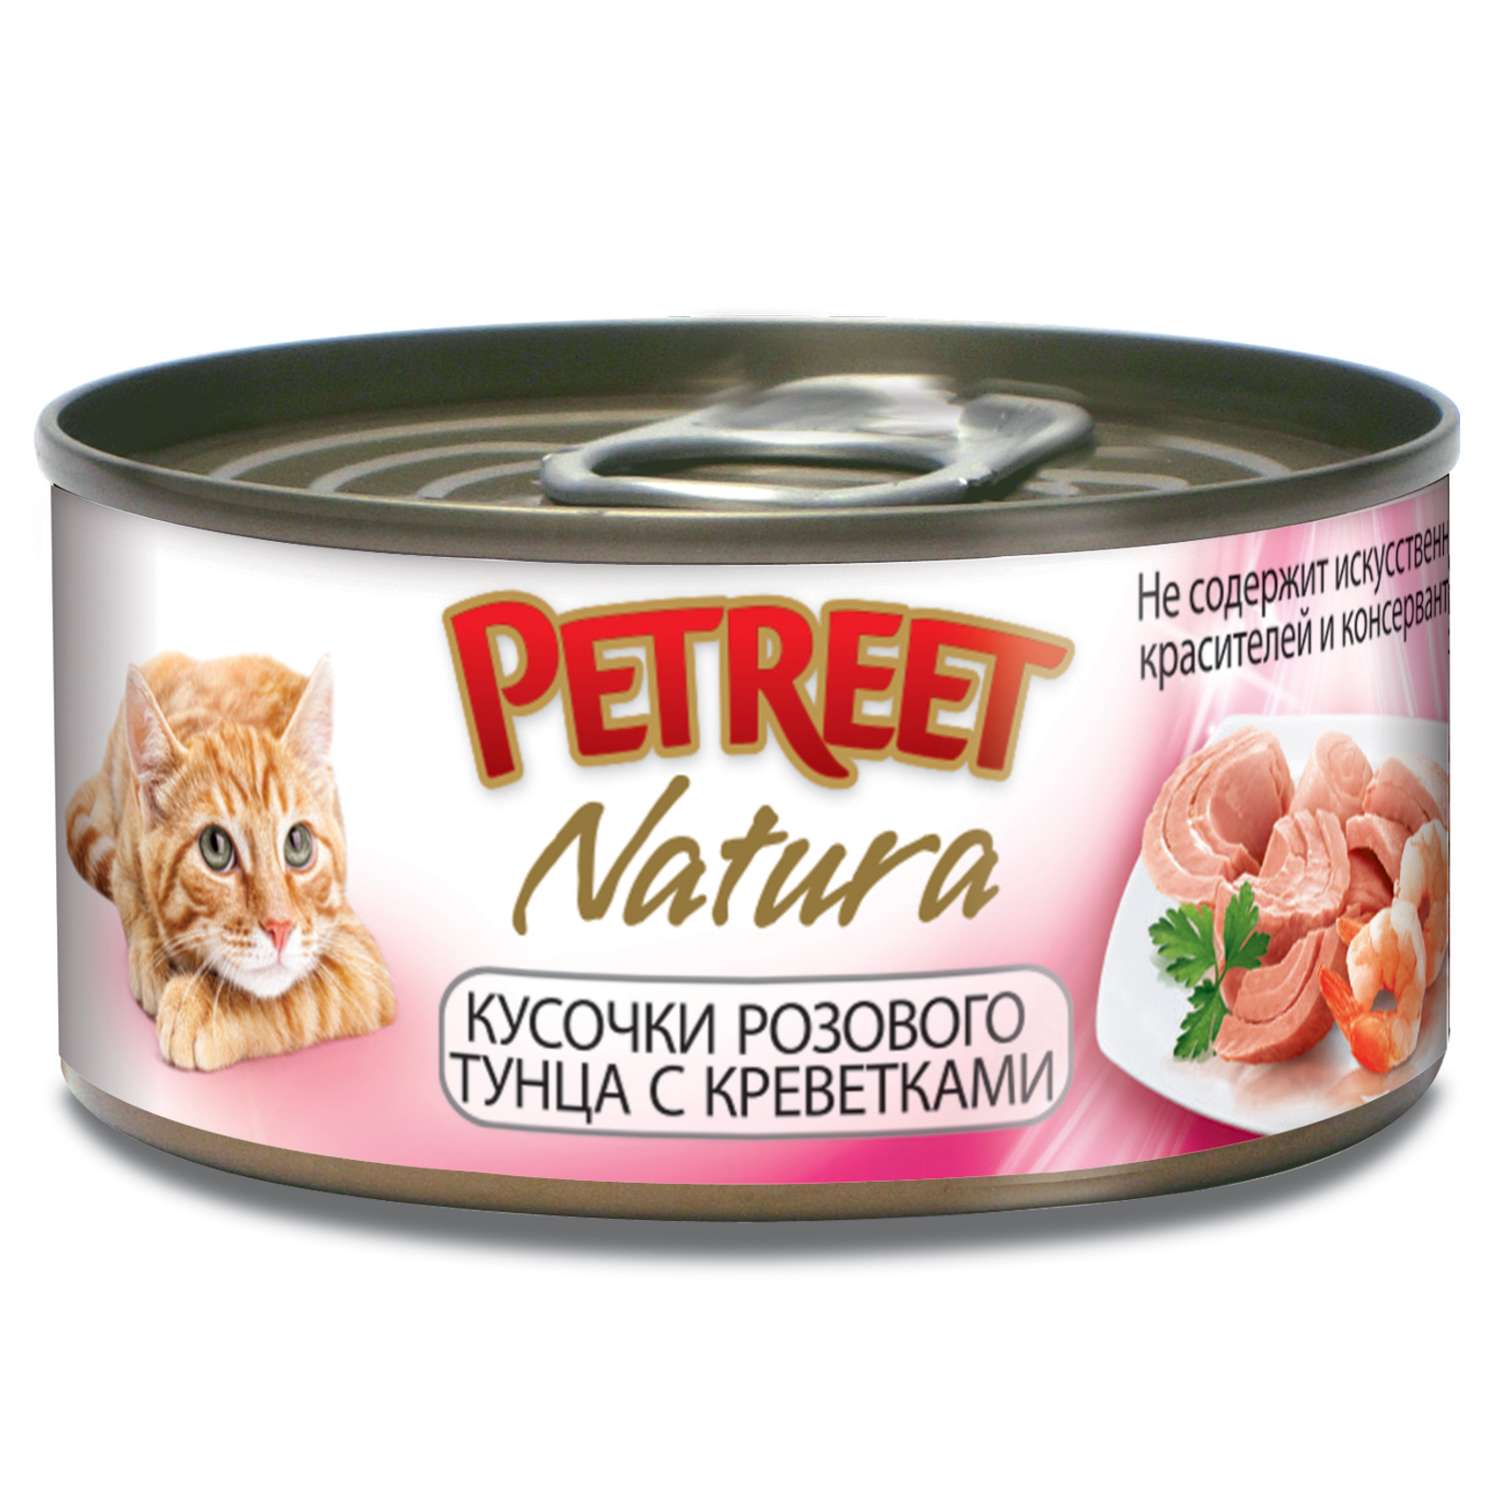 Корм влажный для кошек Petreet 70г кусочки розового тунца с креветками консервированный - фото 1